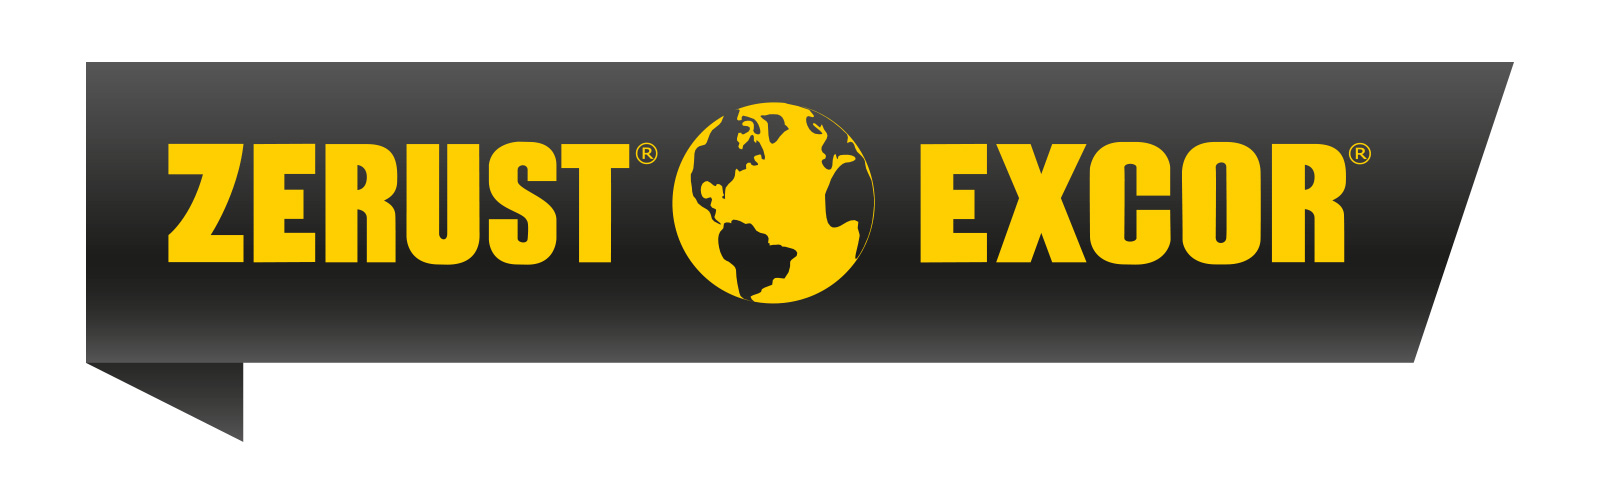 zerust-excor-logo.jpg